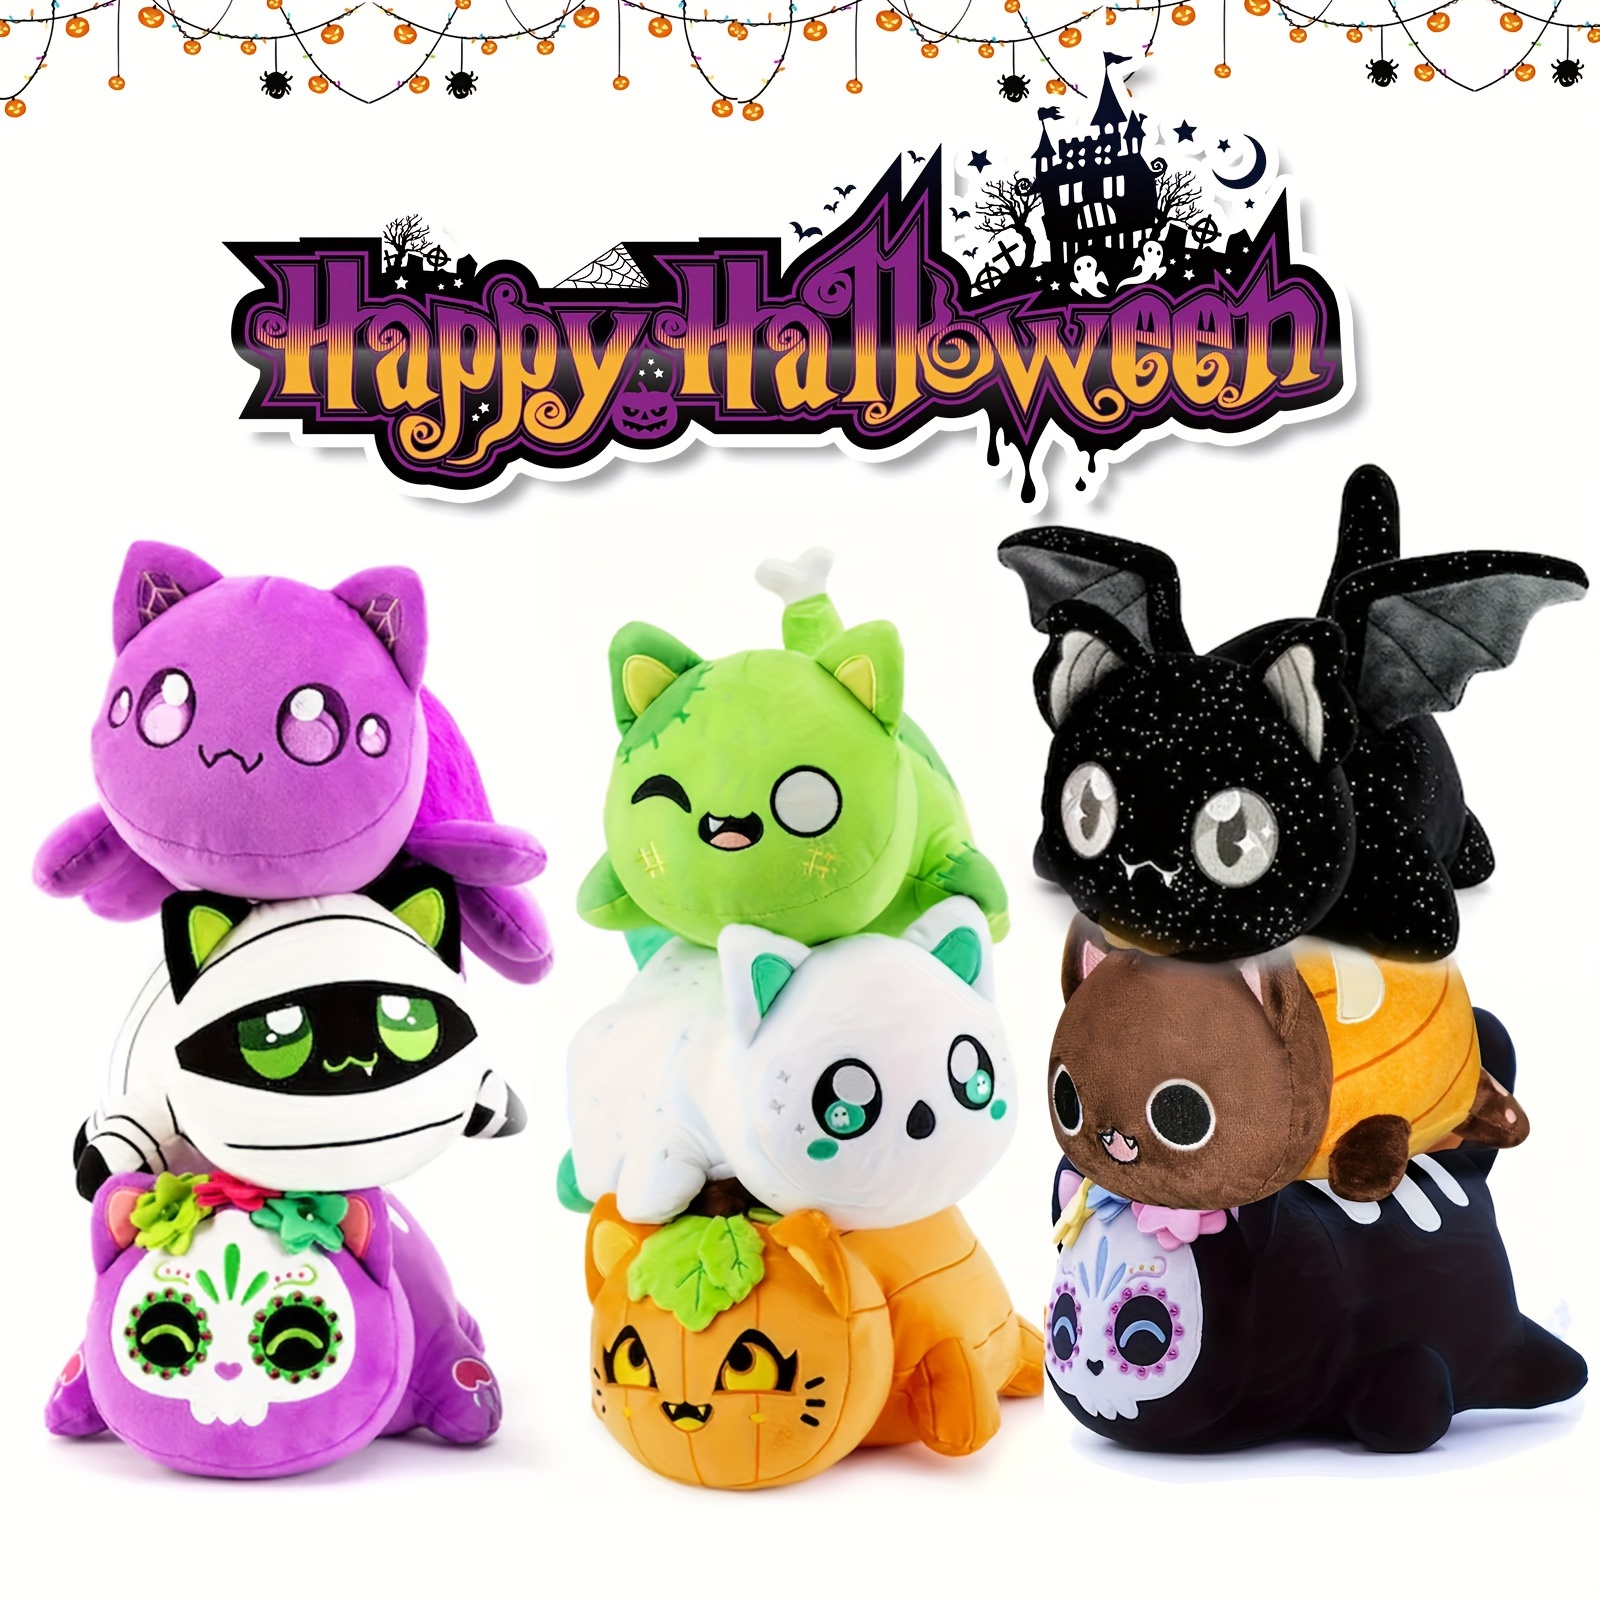 Bonitos juguetes de peluche de gato, muñecas de personajes, peluches de  animales de peluche, peluches 5D, decoraciones de almohada suaves, juguete